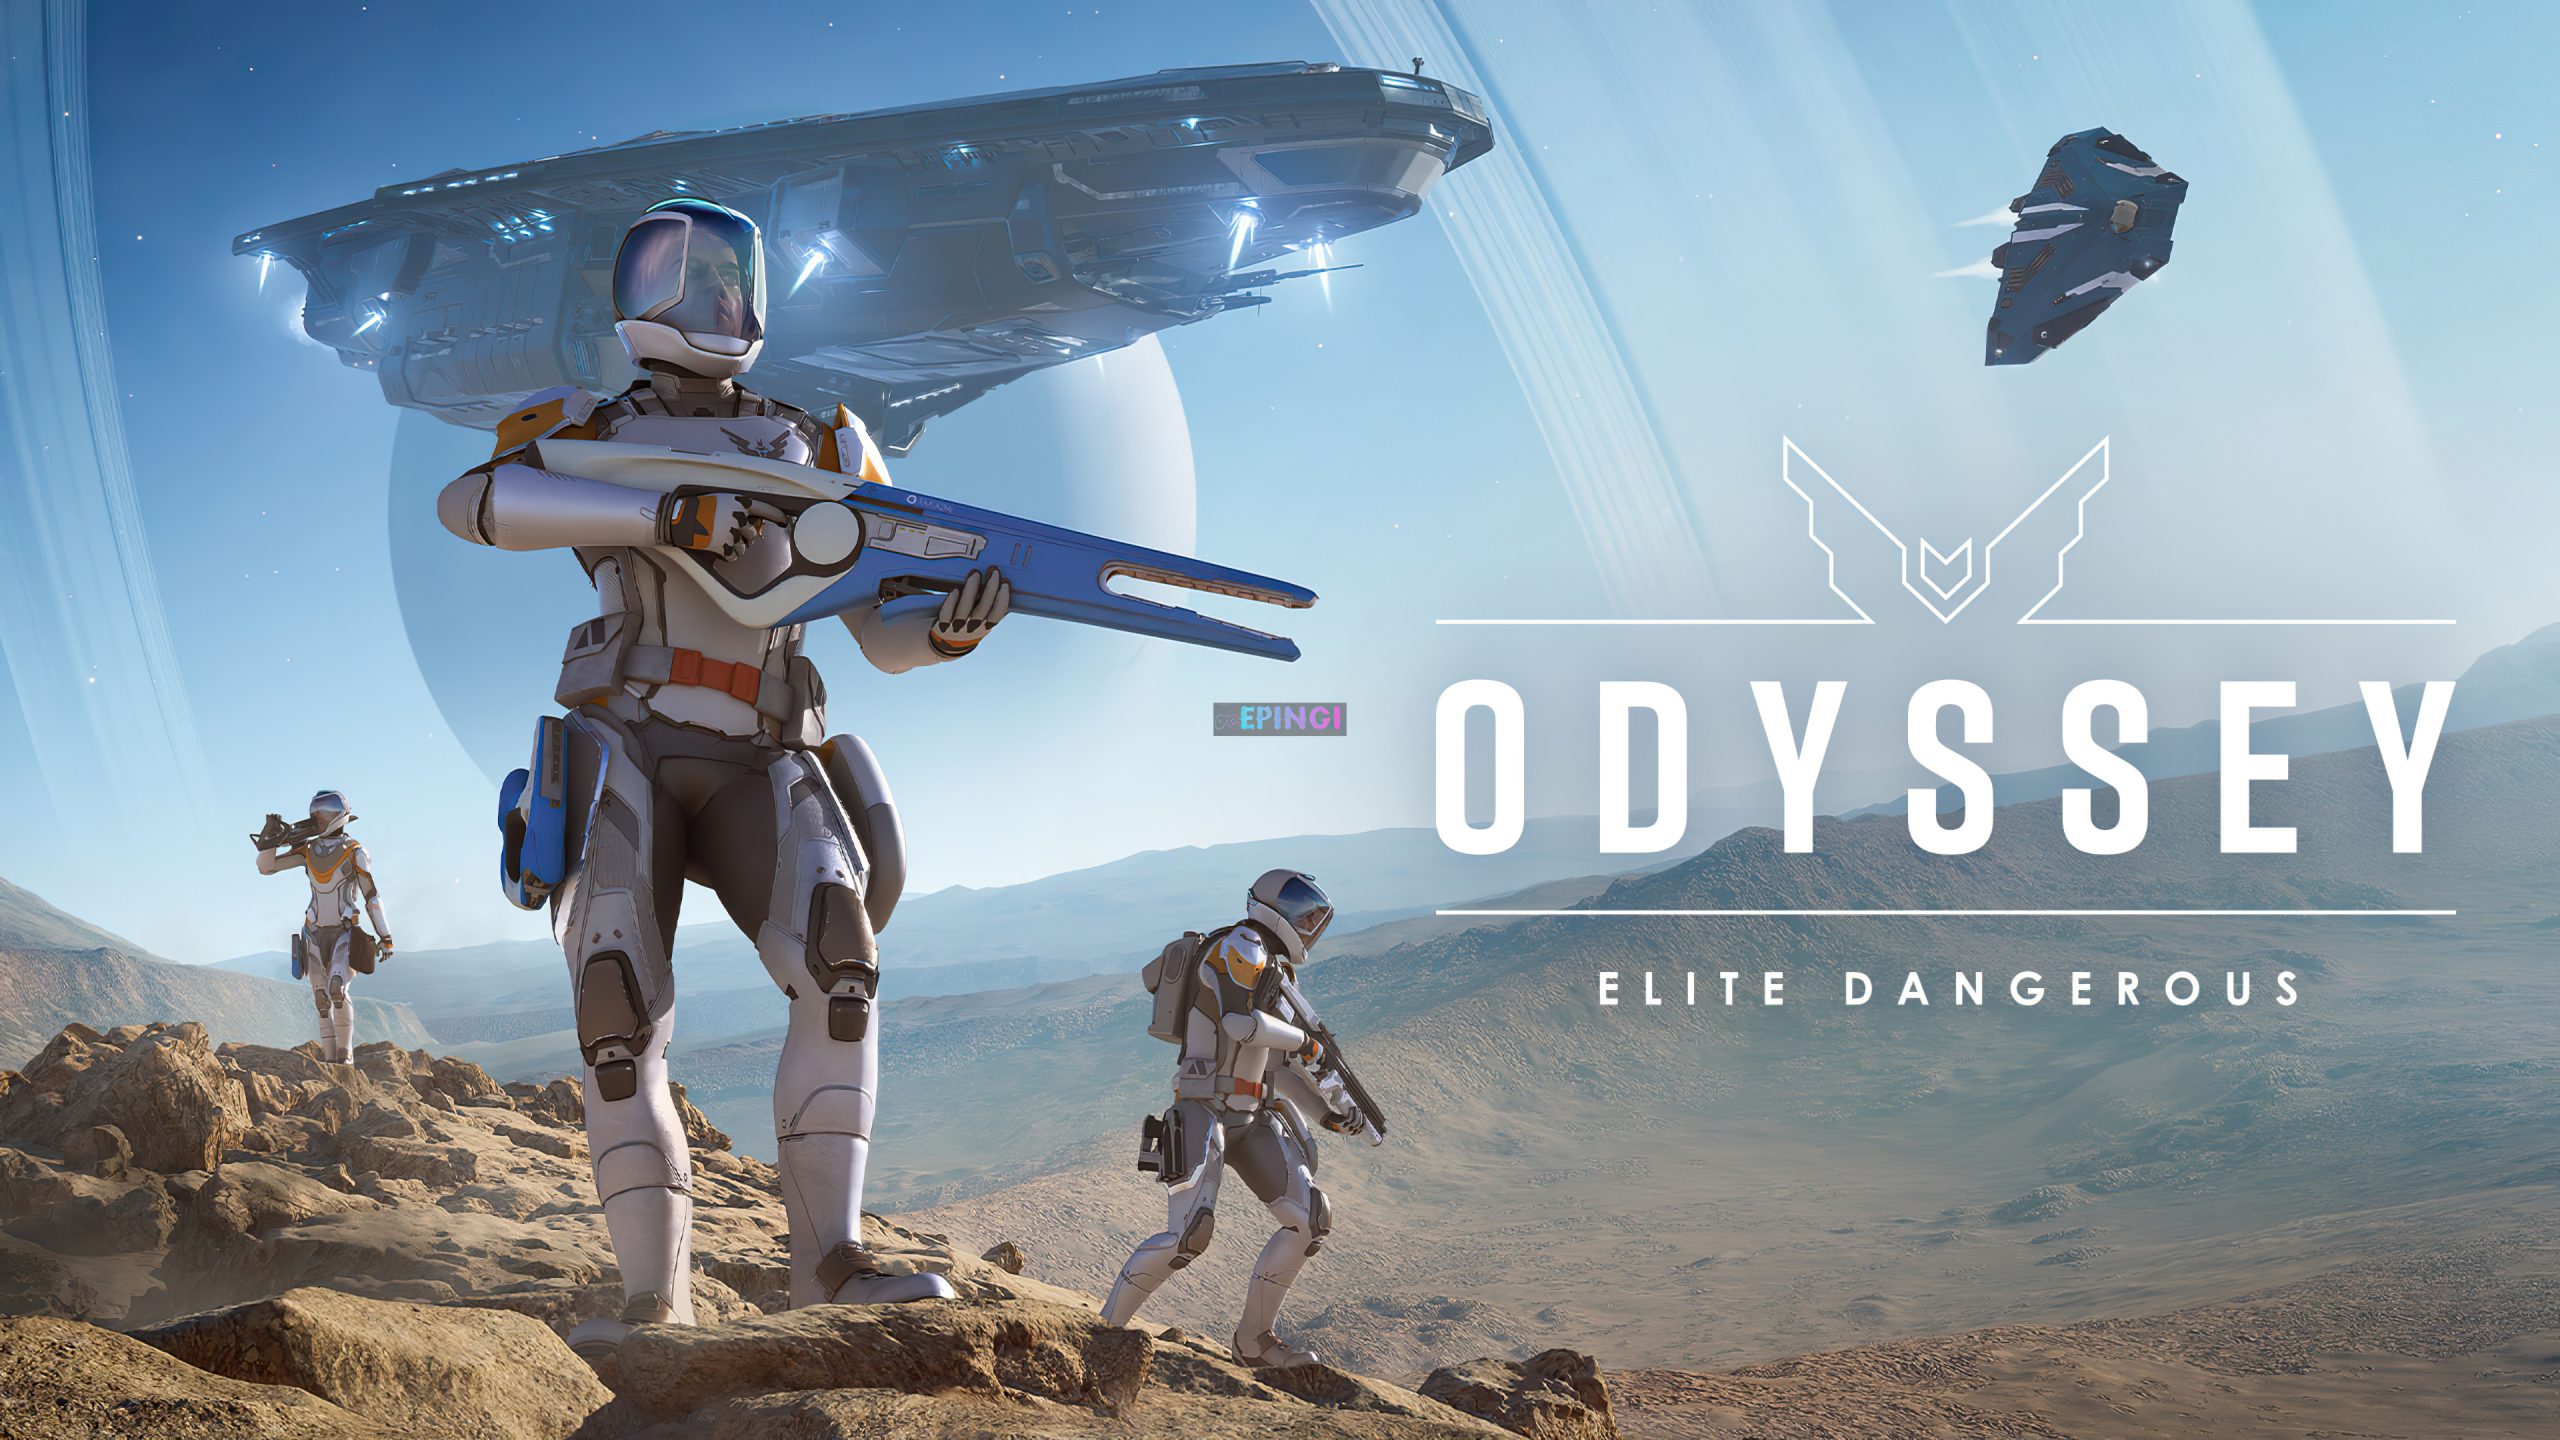 Elite Dangerous Odyssey dévoile une mission au sol dans une vidéo de